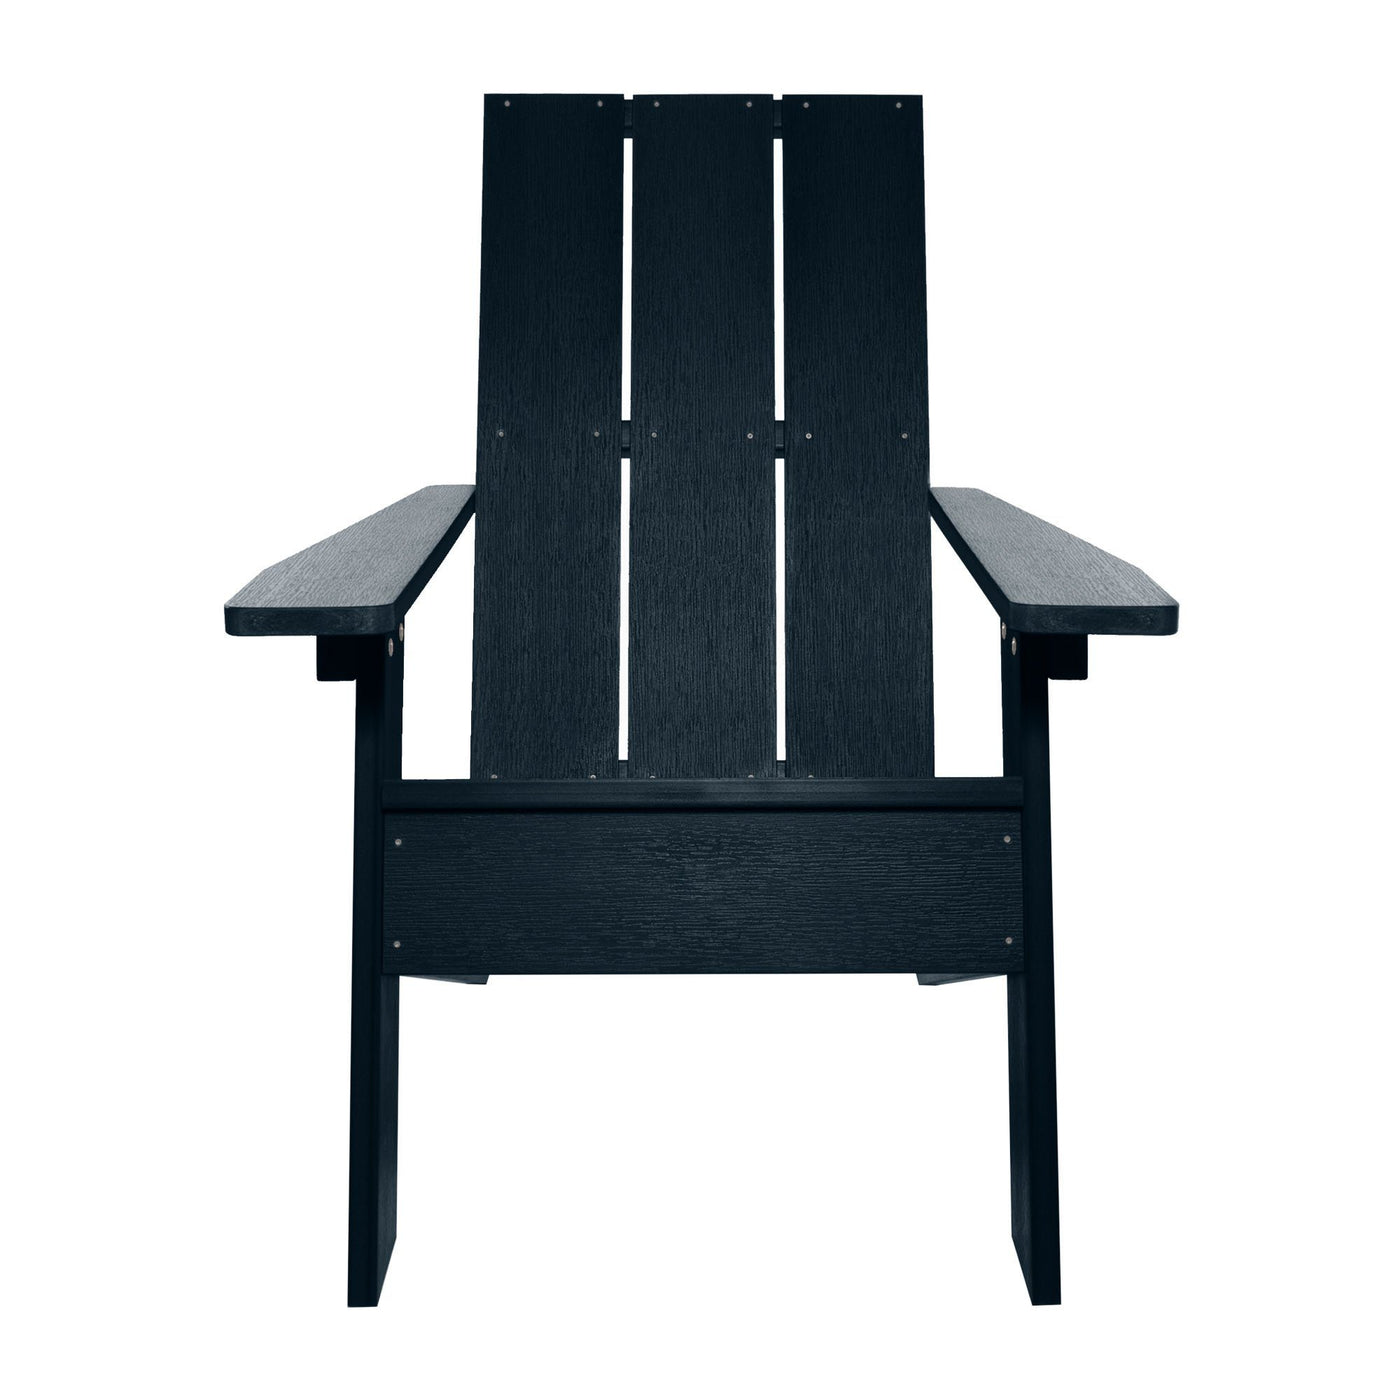 Barcelona Modern Adirondack Chair, Ottoman, and Side Table Highwood USA 